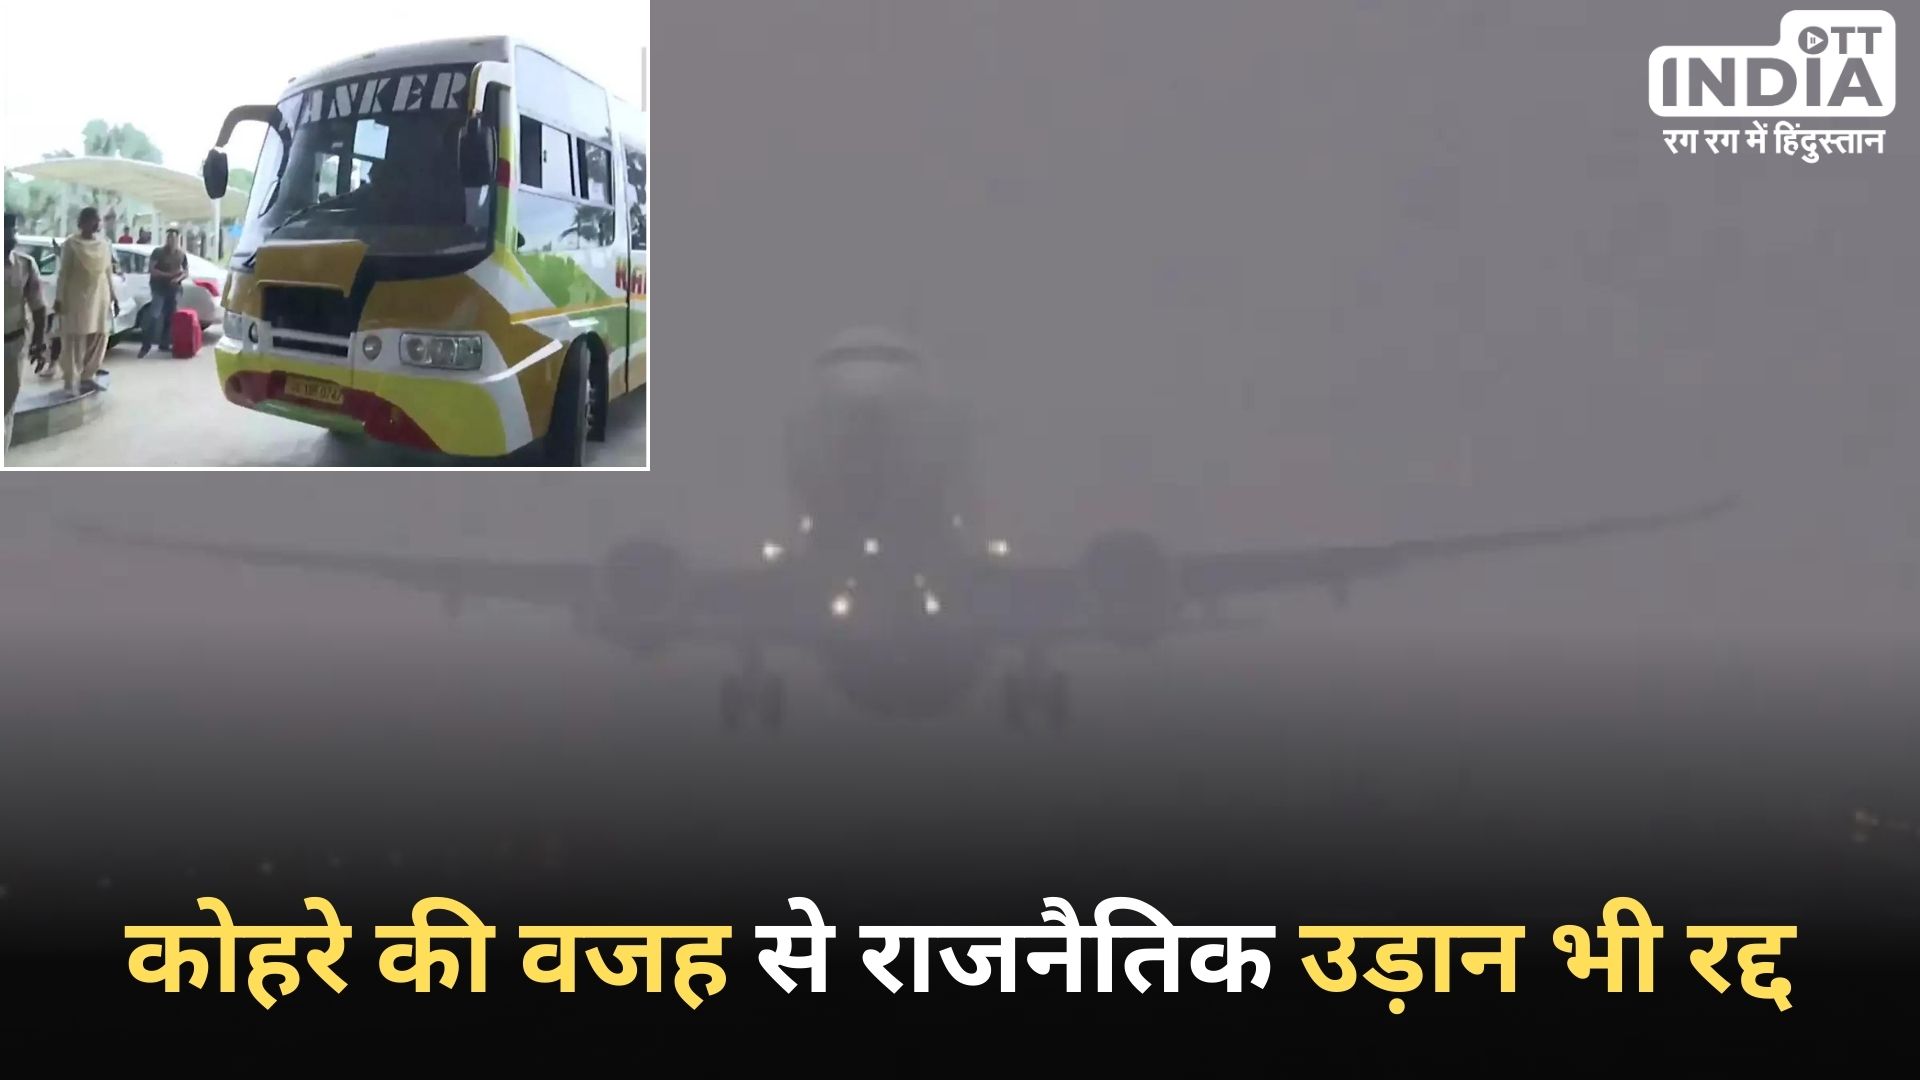 Jharkhand Politics: कोहरे के कारण उड़ान नहीं भर सका विमान, राजनीति की उड़ान भी रुकी